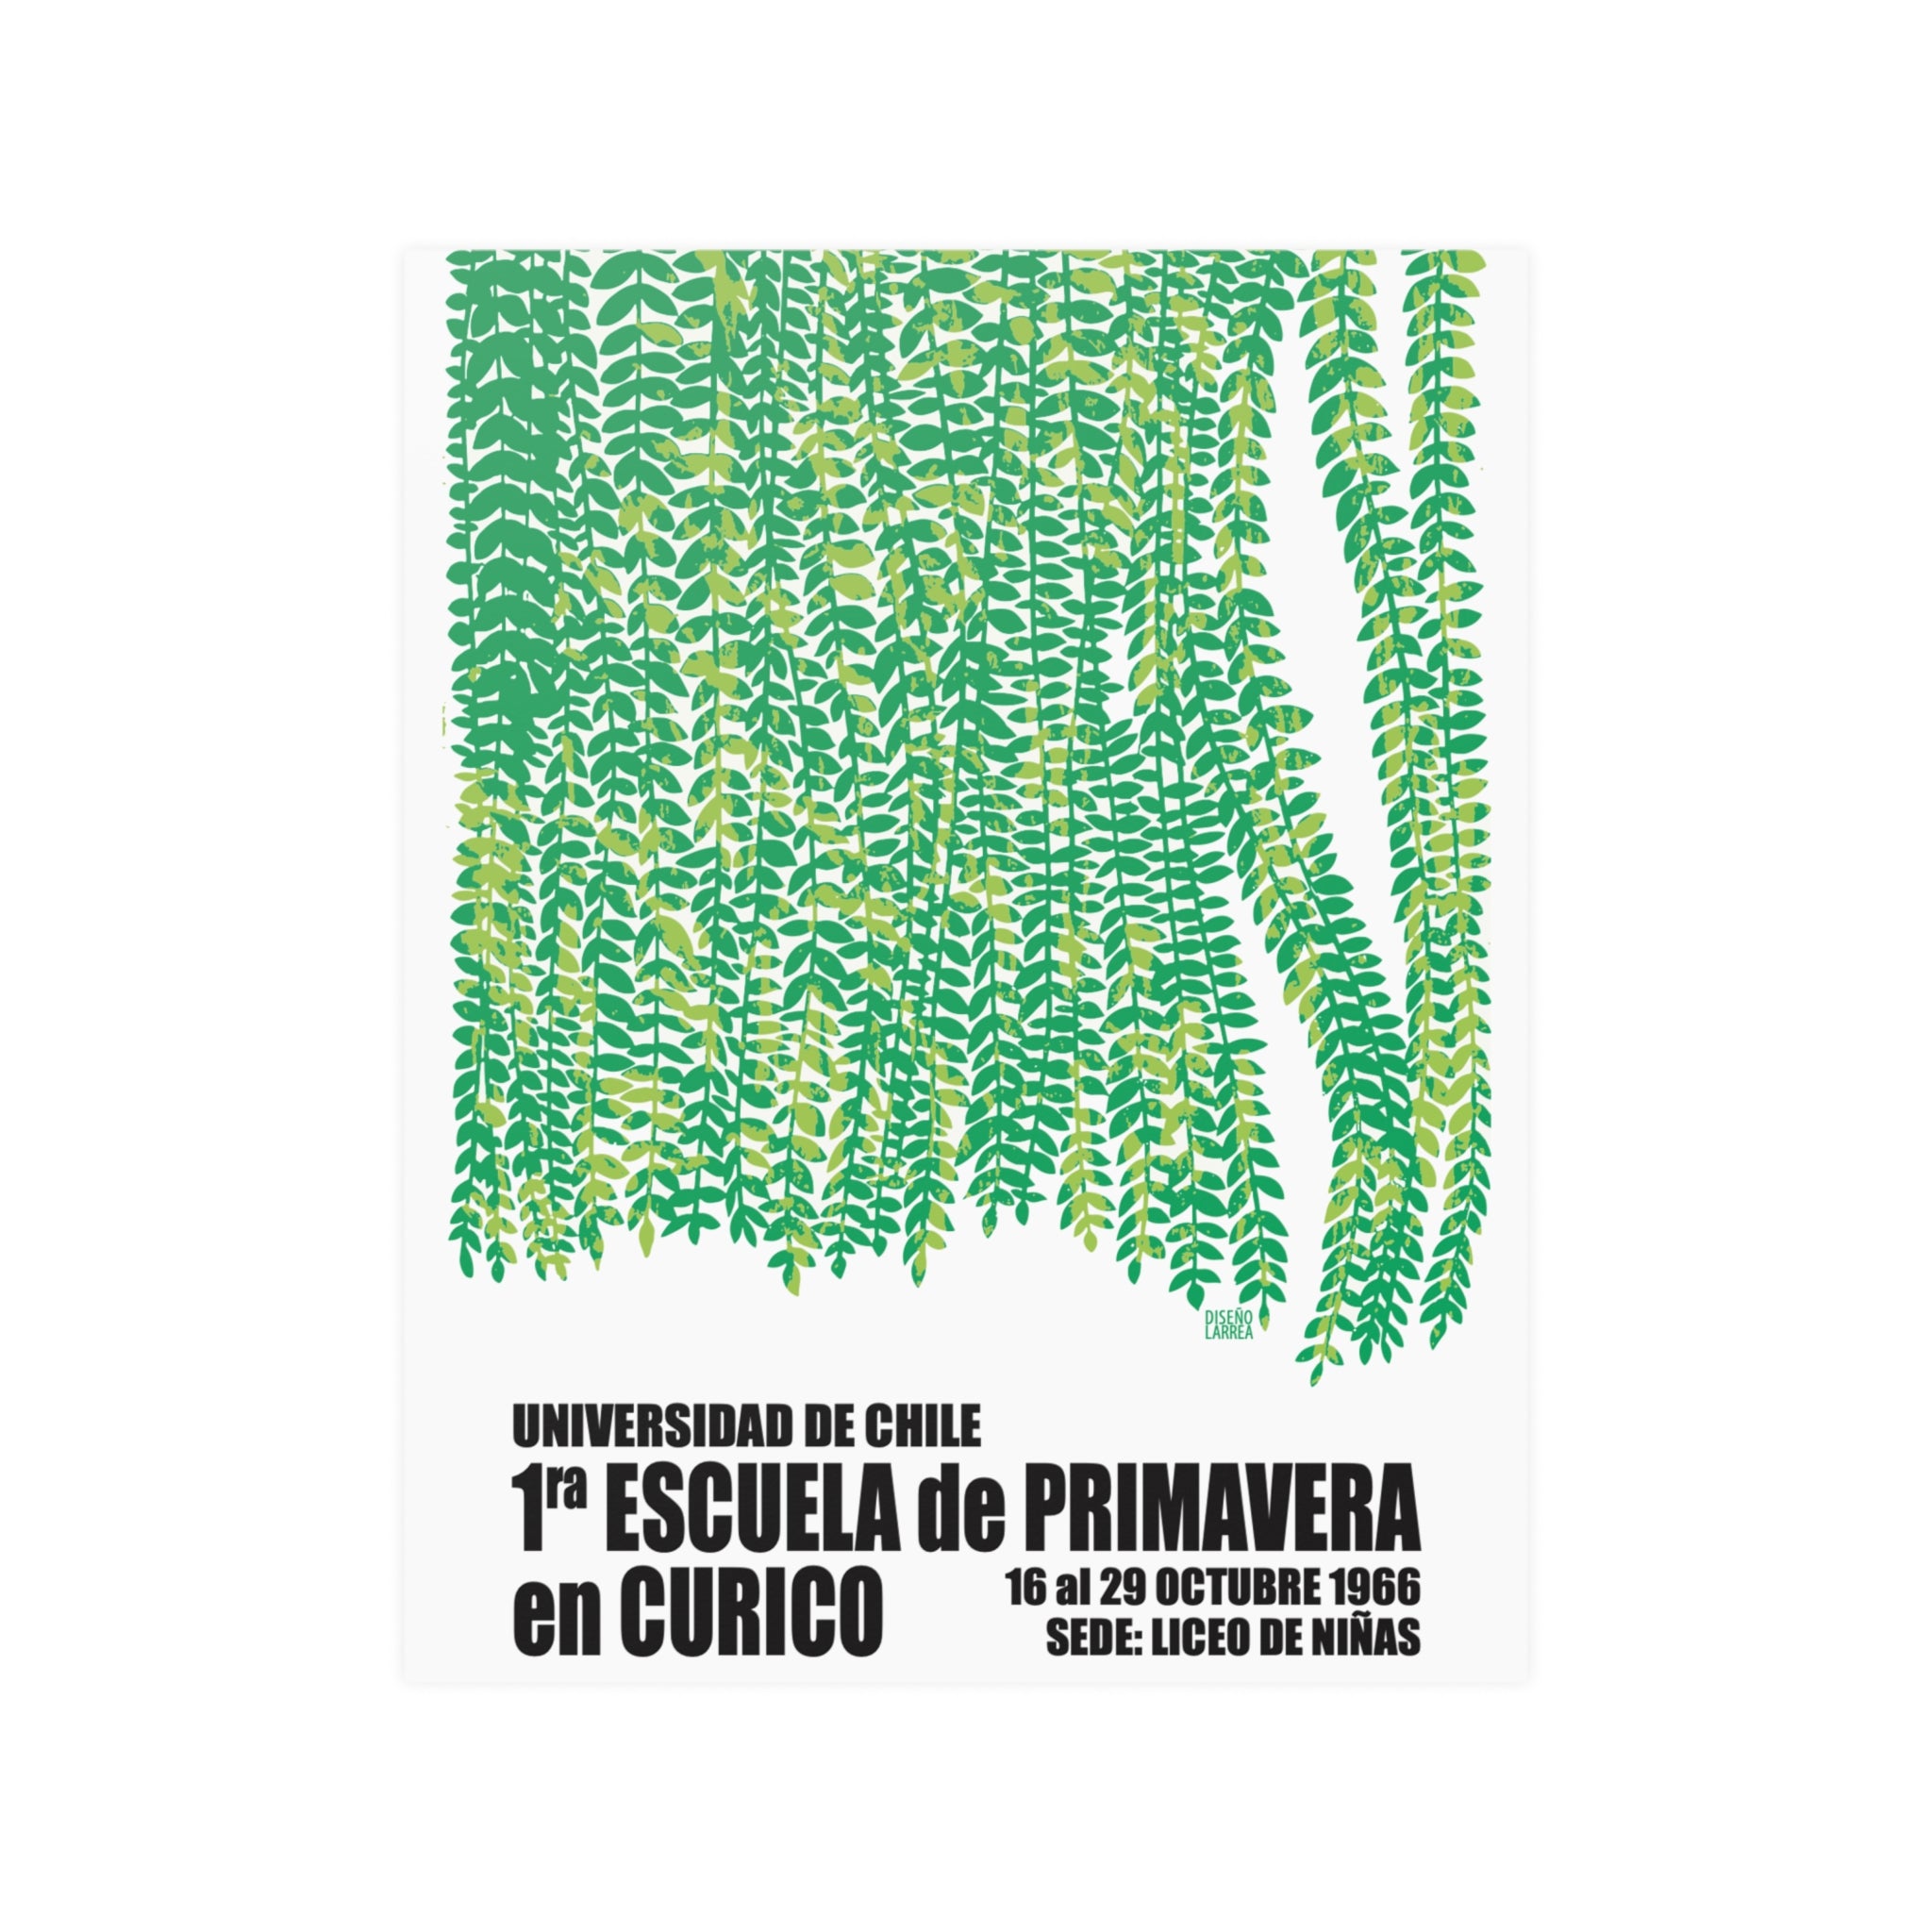 Poster "1ª Escuela de Primavera en Curicó"